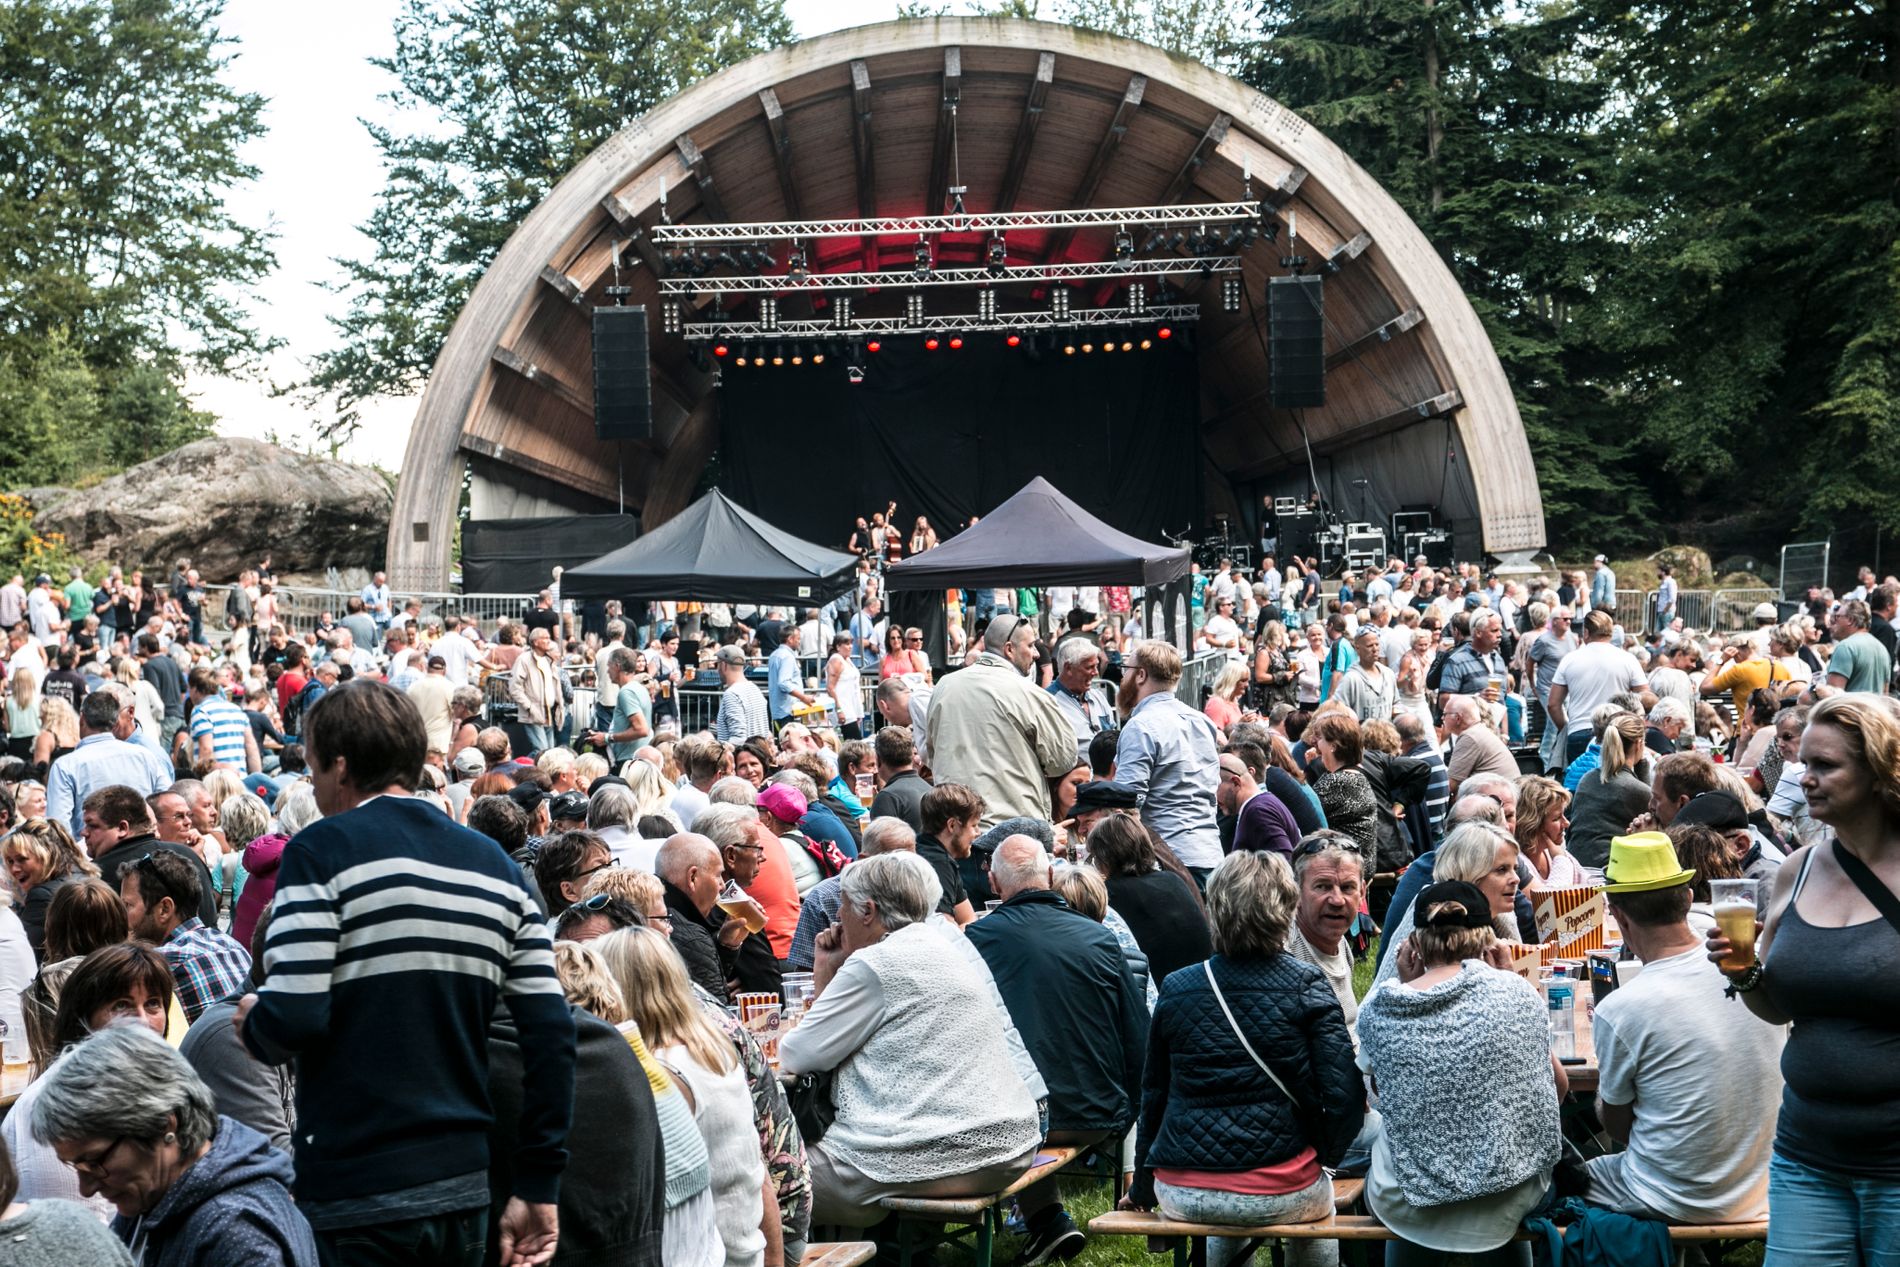  Historiens første Ravnedalen Live i 2016 ble en suksess, og samlet 4000 gjester. Både i fjor og i år kunne gjestene nyte eget festivaløl.